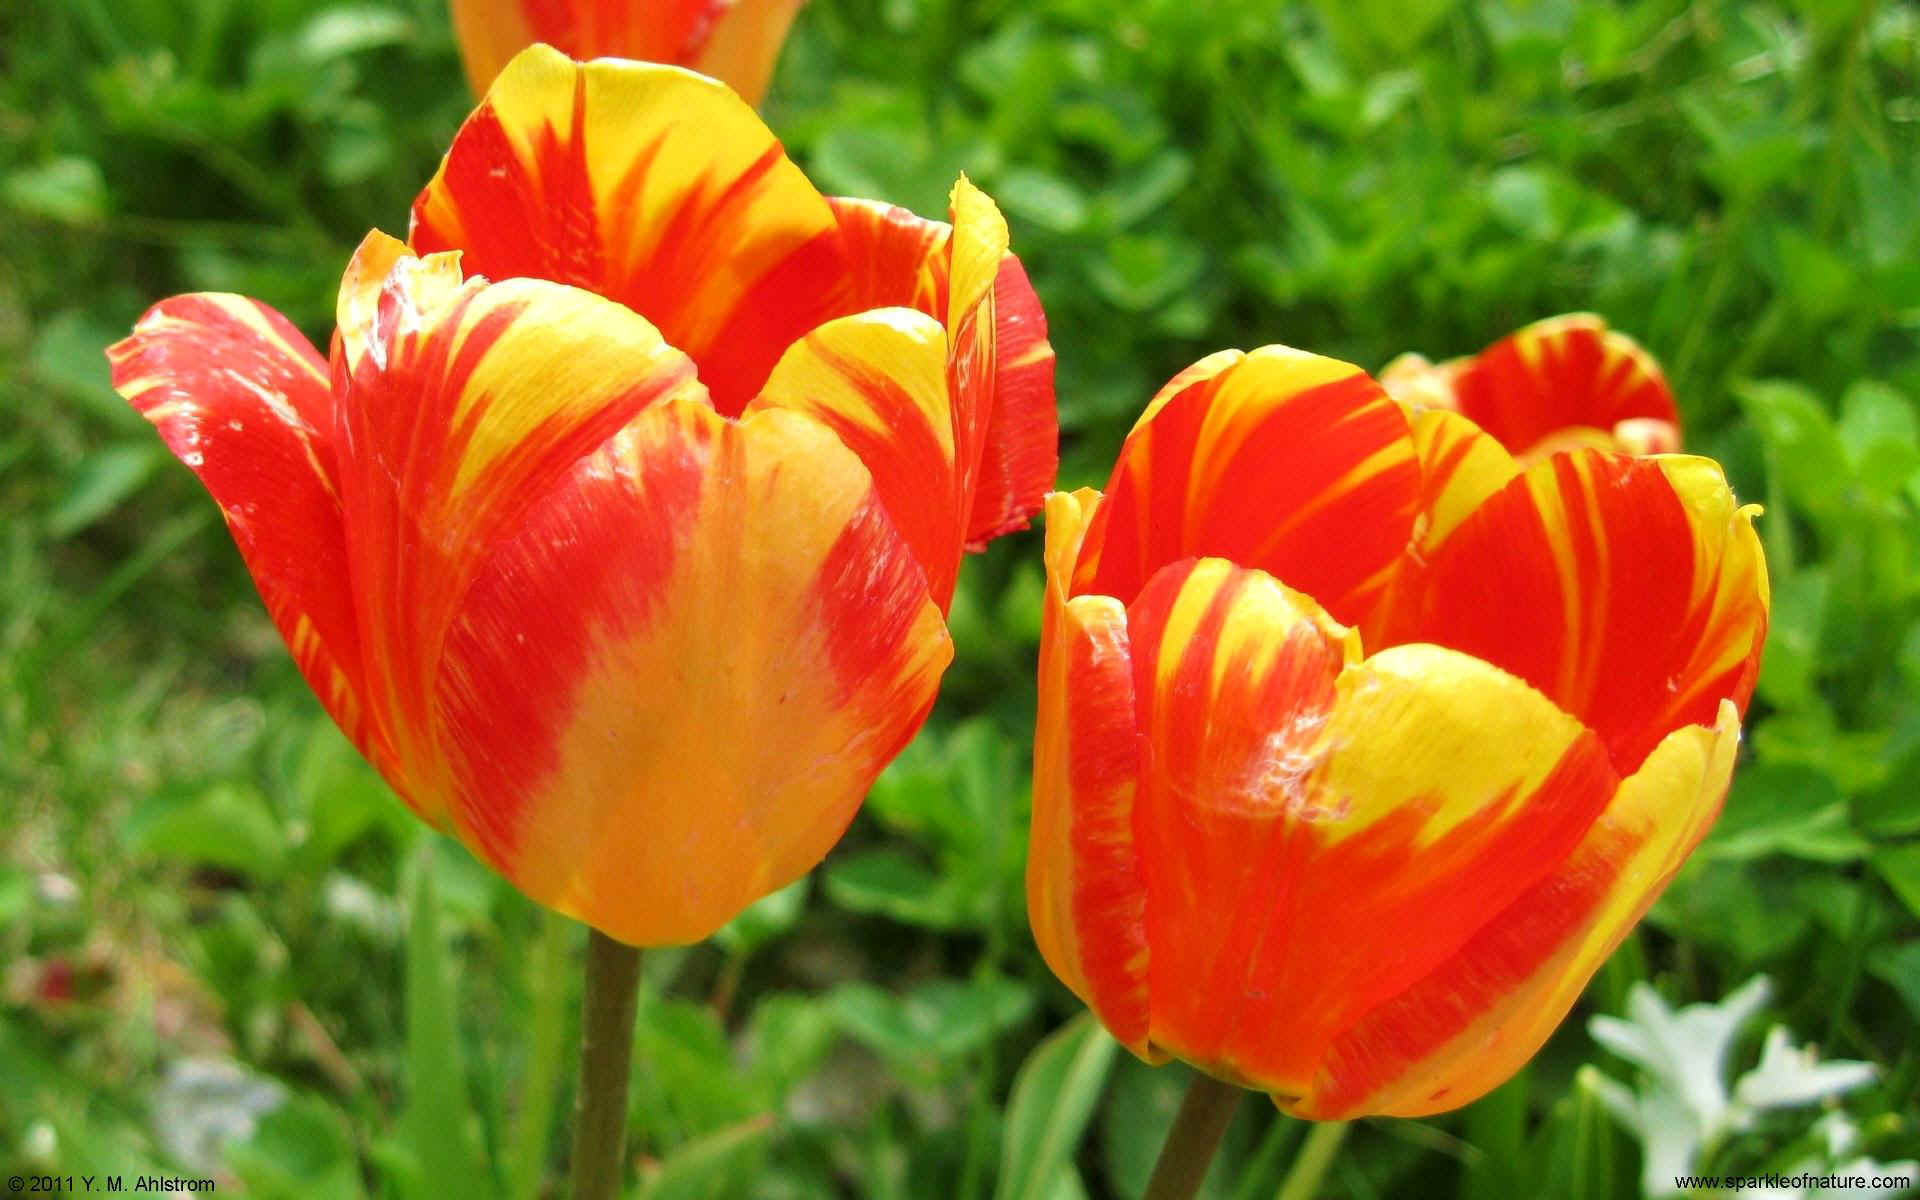 23530 tulips w 1920x1200.jpg (248254 bytes)